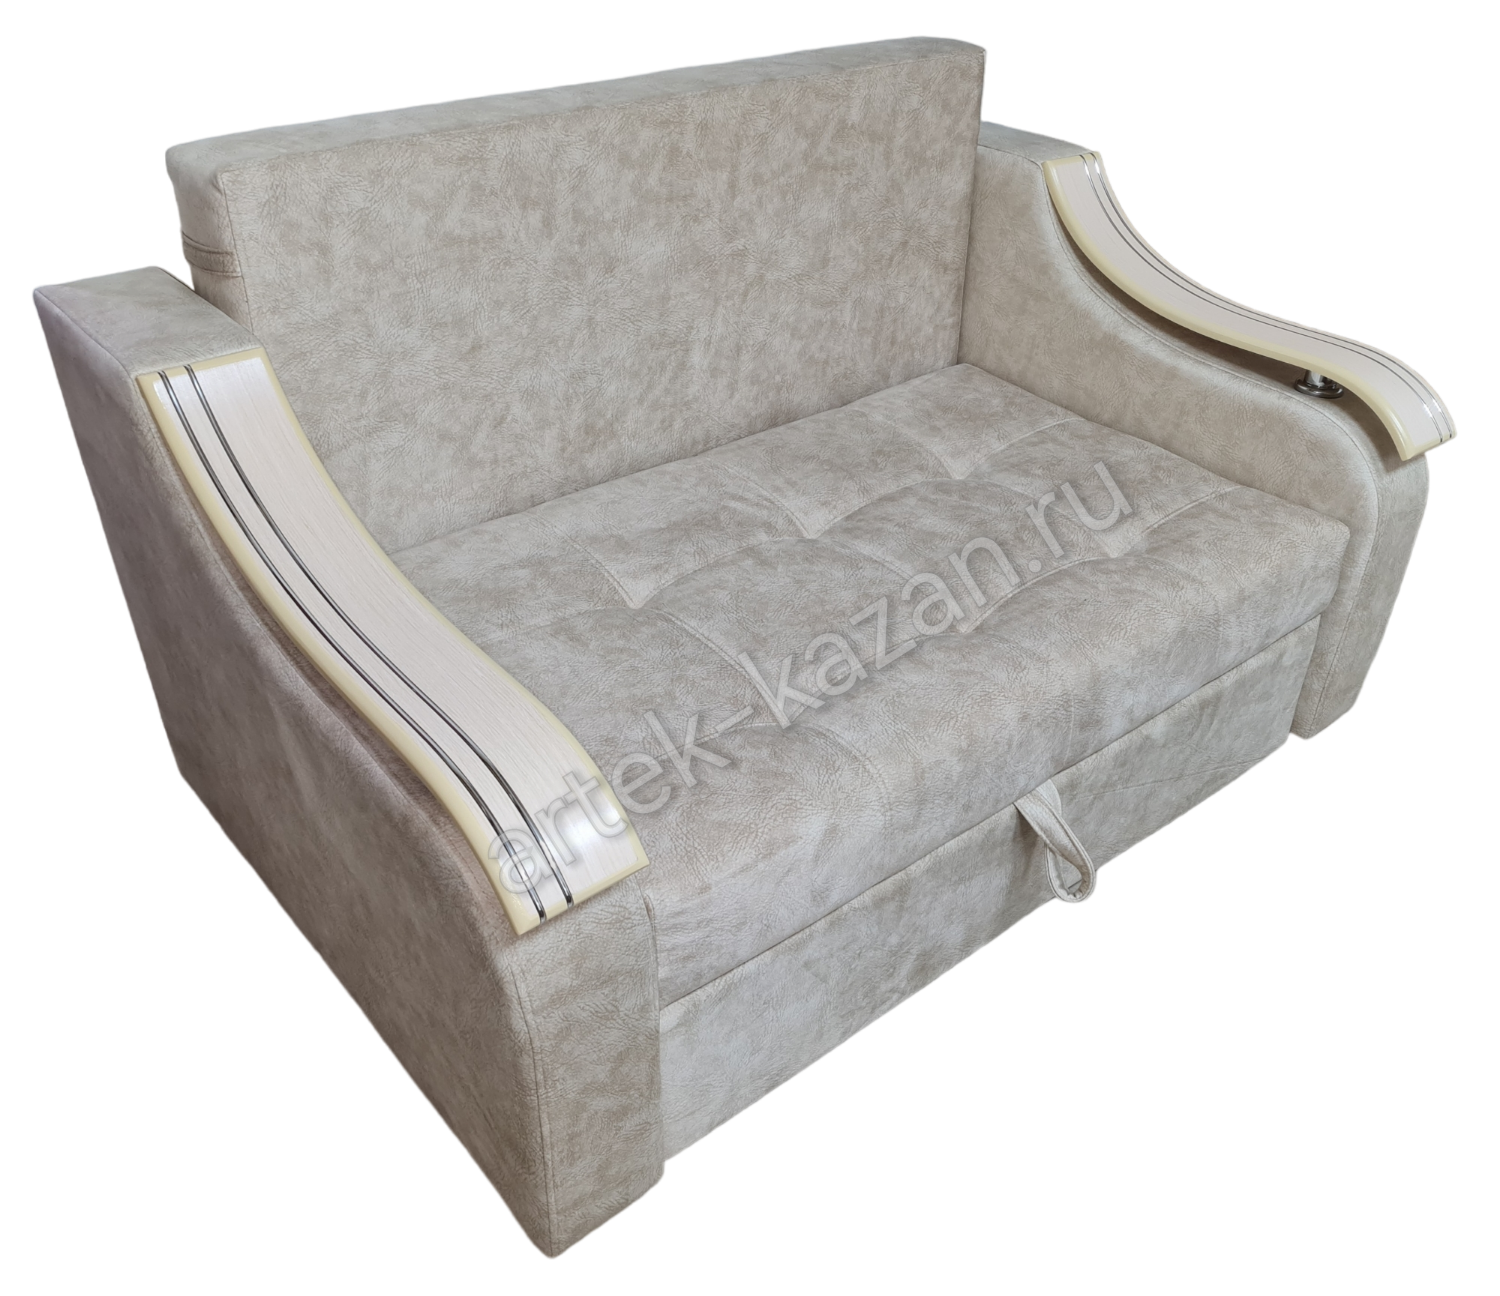 Мини диван на выкатном механизме Миник фото № 41. Купить недорогой диван по низкой цене от производителя можно у нас.